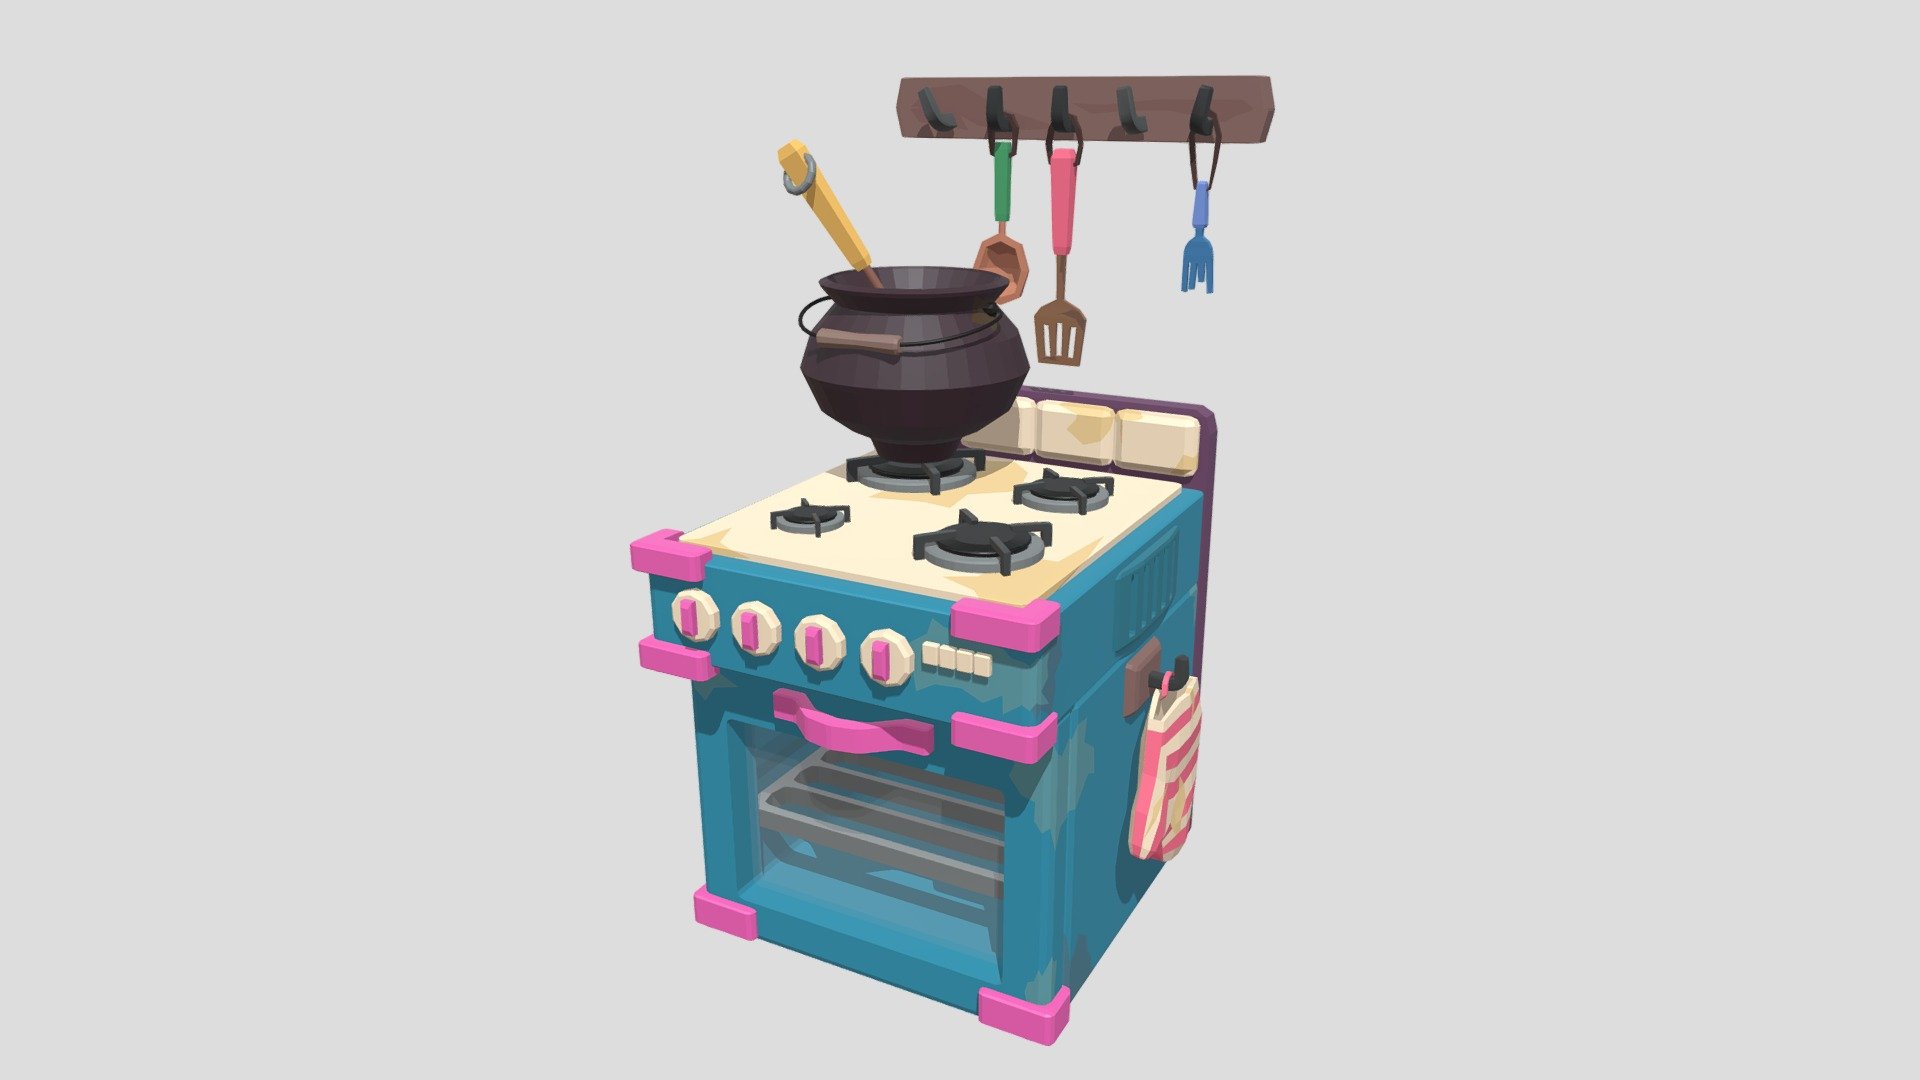 Stylized stove and kitchen props - 3D model by gpodolskaya 3d model